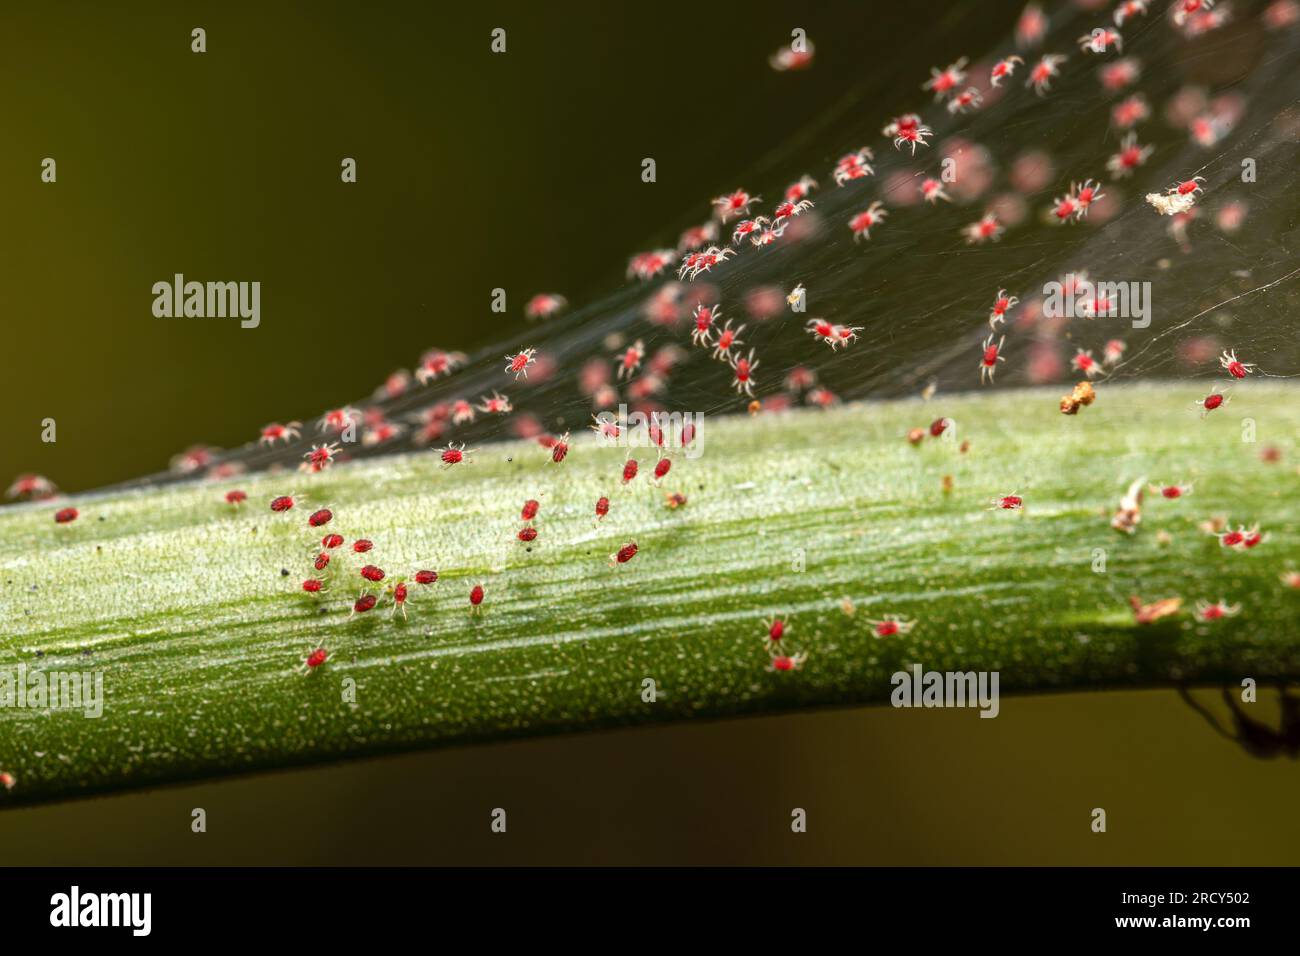 Plant-feeding red spider mite on garden crops Stock Photo